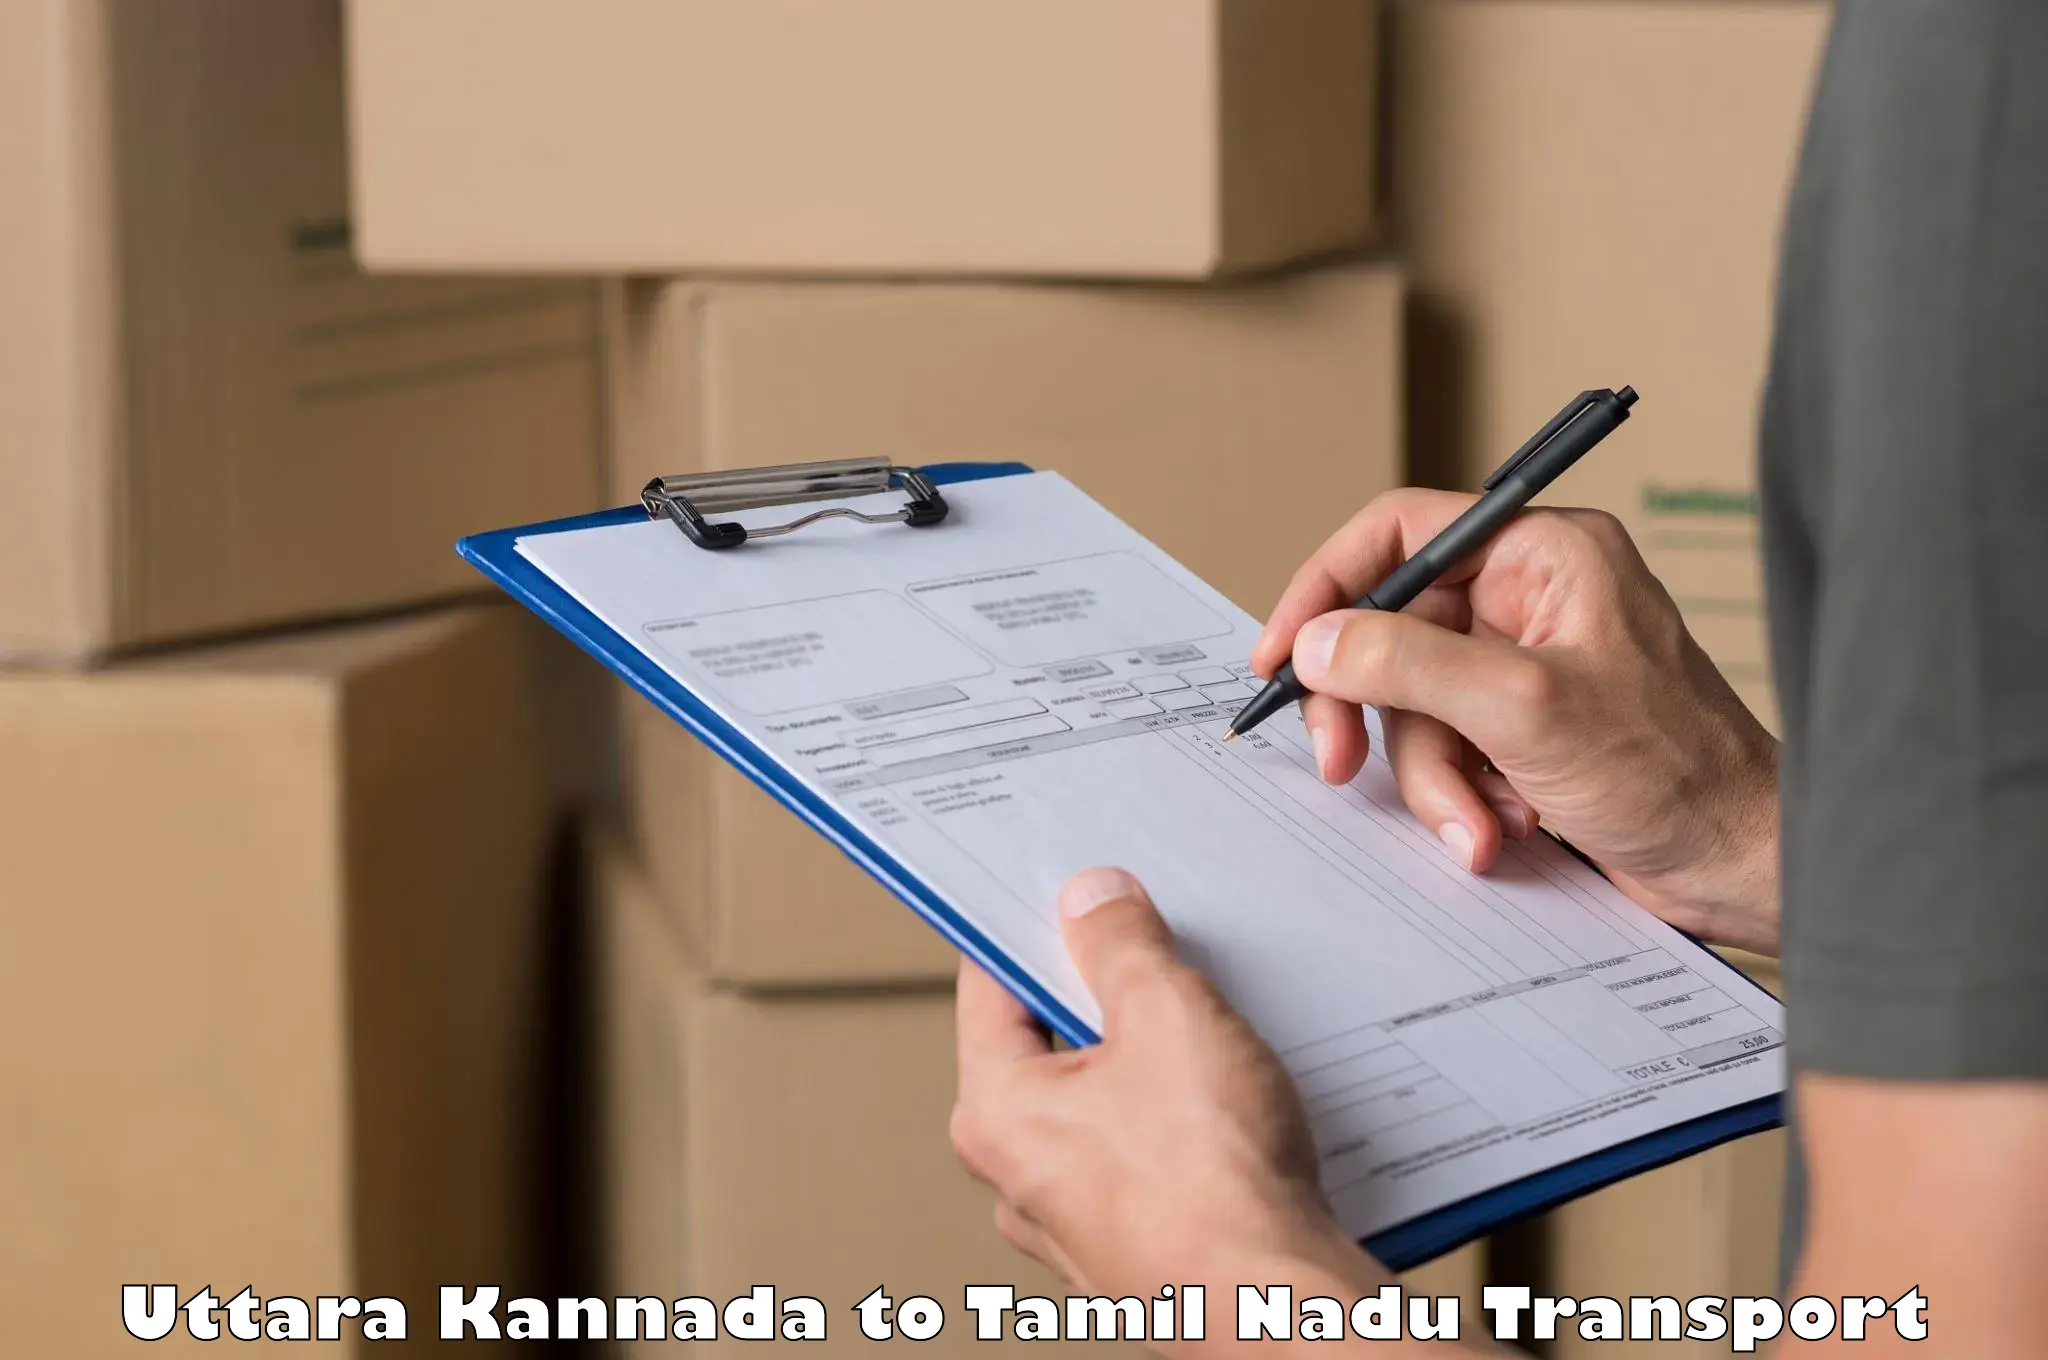 Online transport service Uttara Kannada to Thuckalay